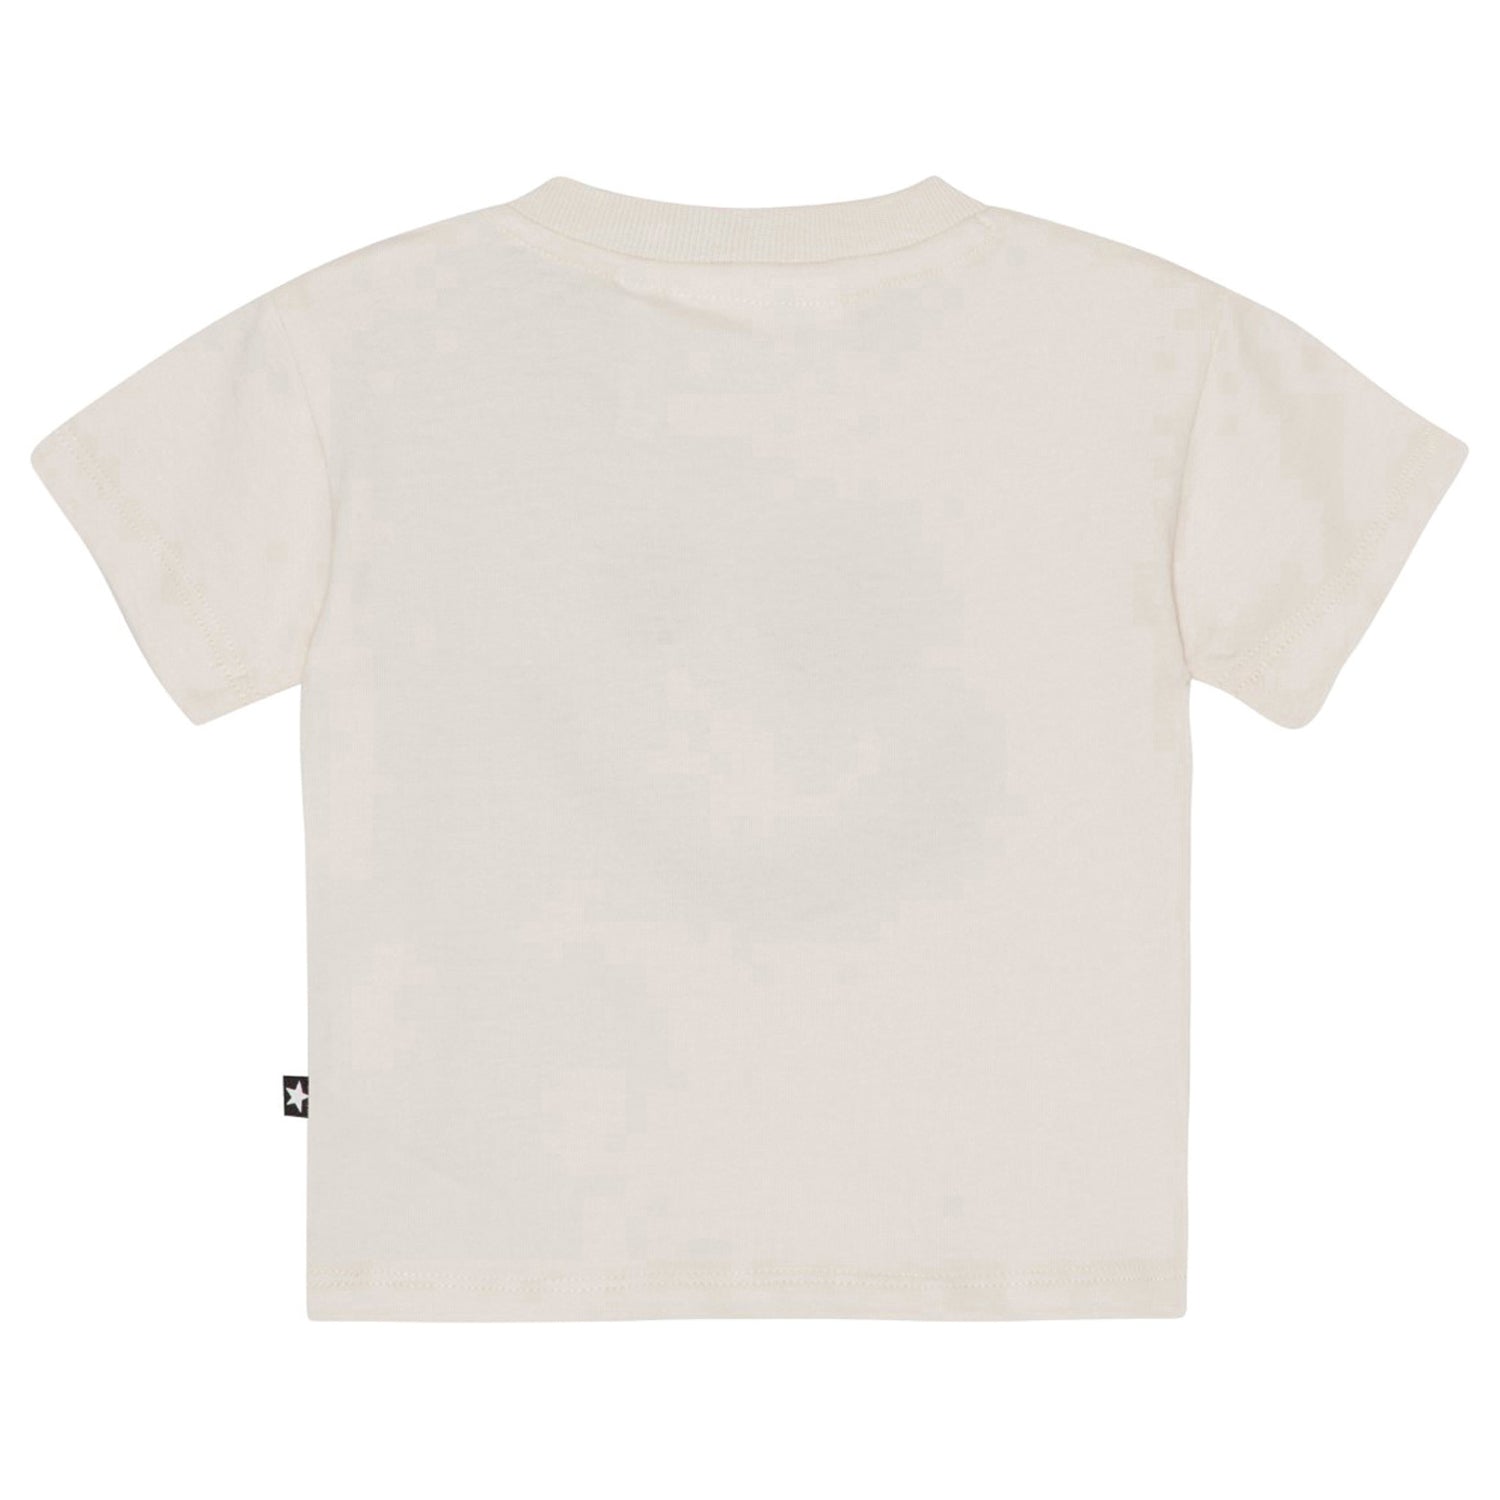 Molo Enzo Short Sleeves T-Shirts - Sea Shell